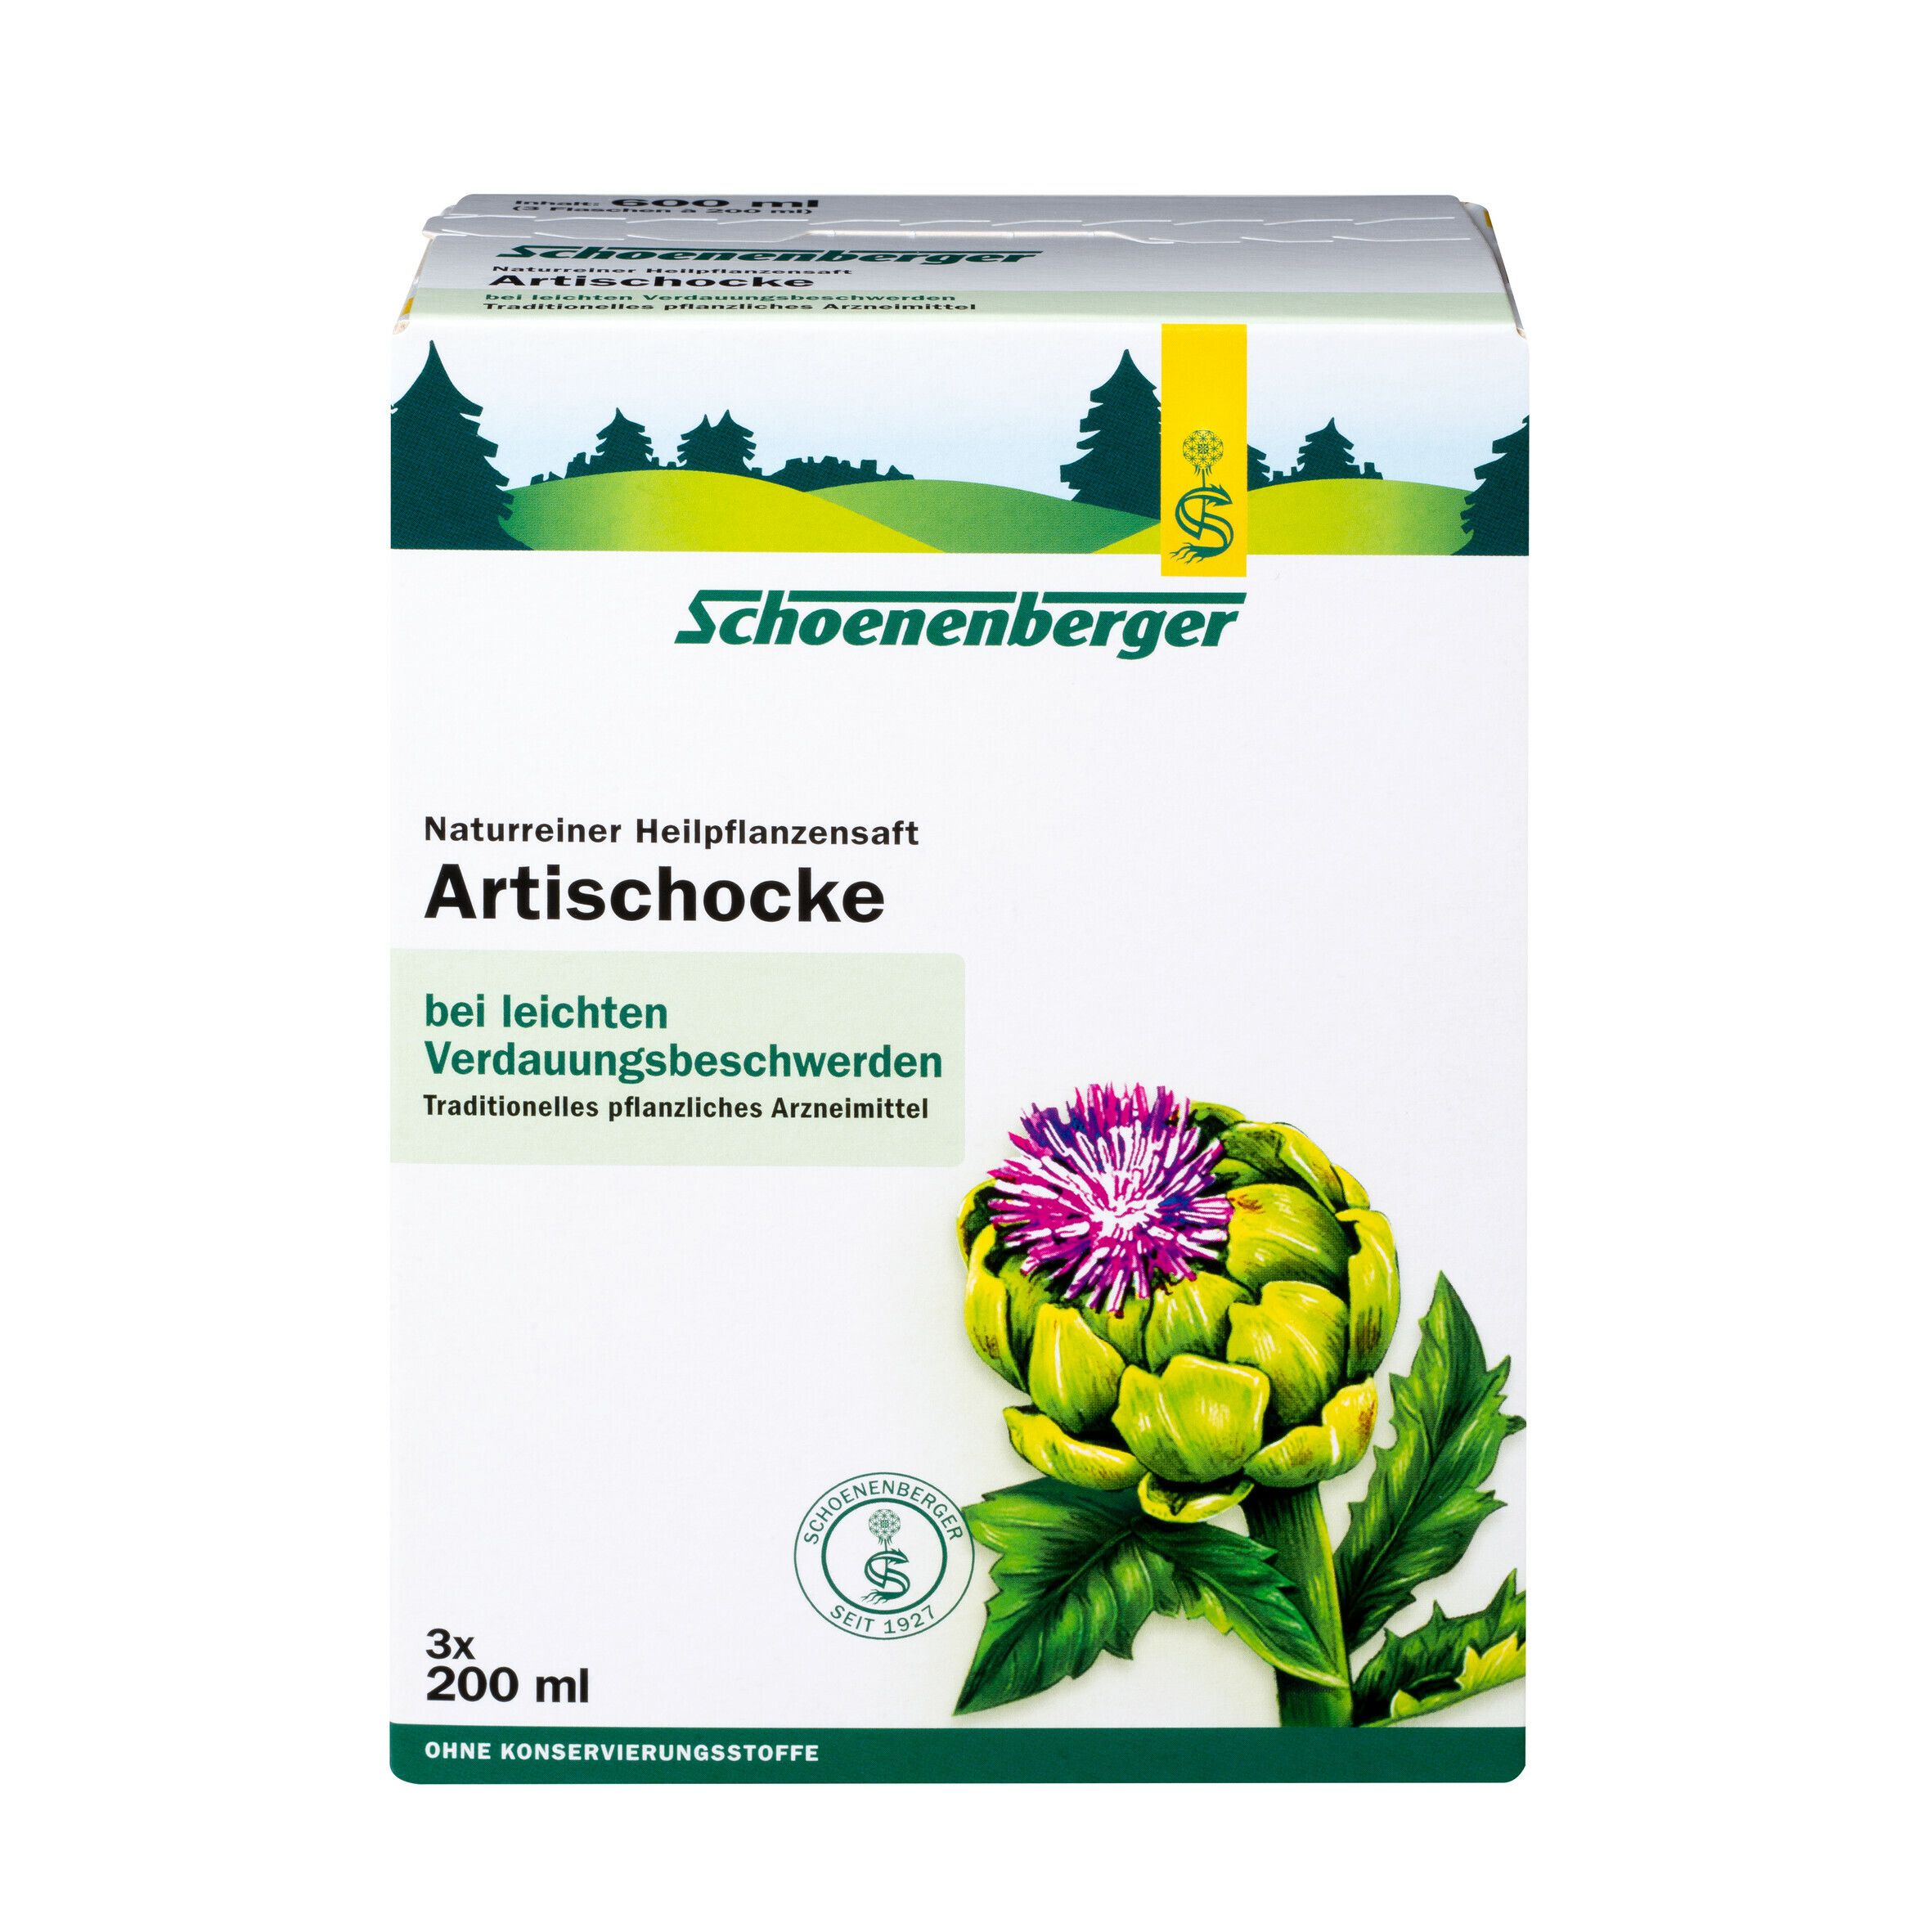 Schoenenberger® naturreiner Heilpflanzensaft Artischocke